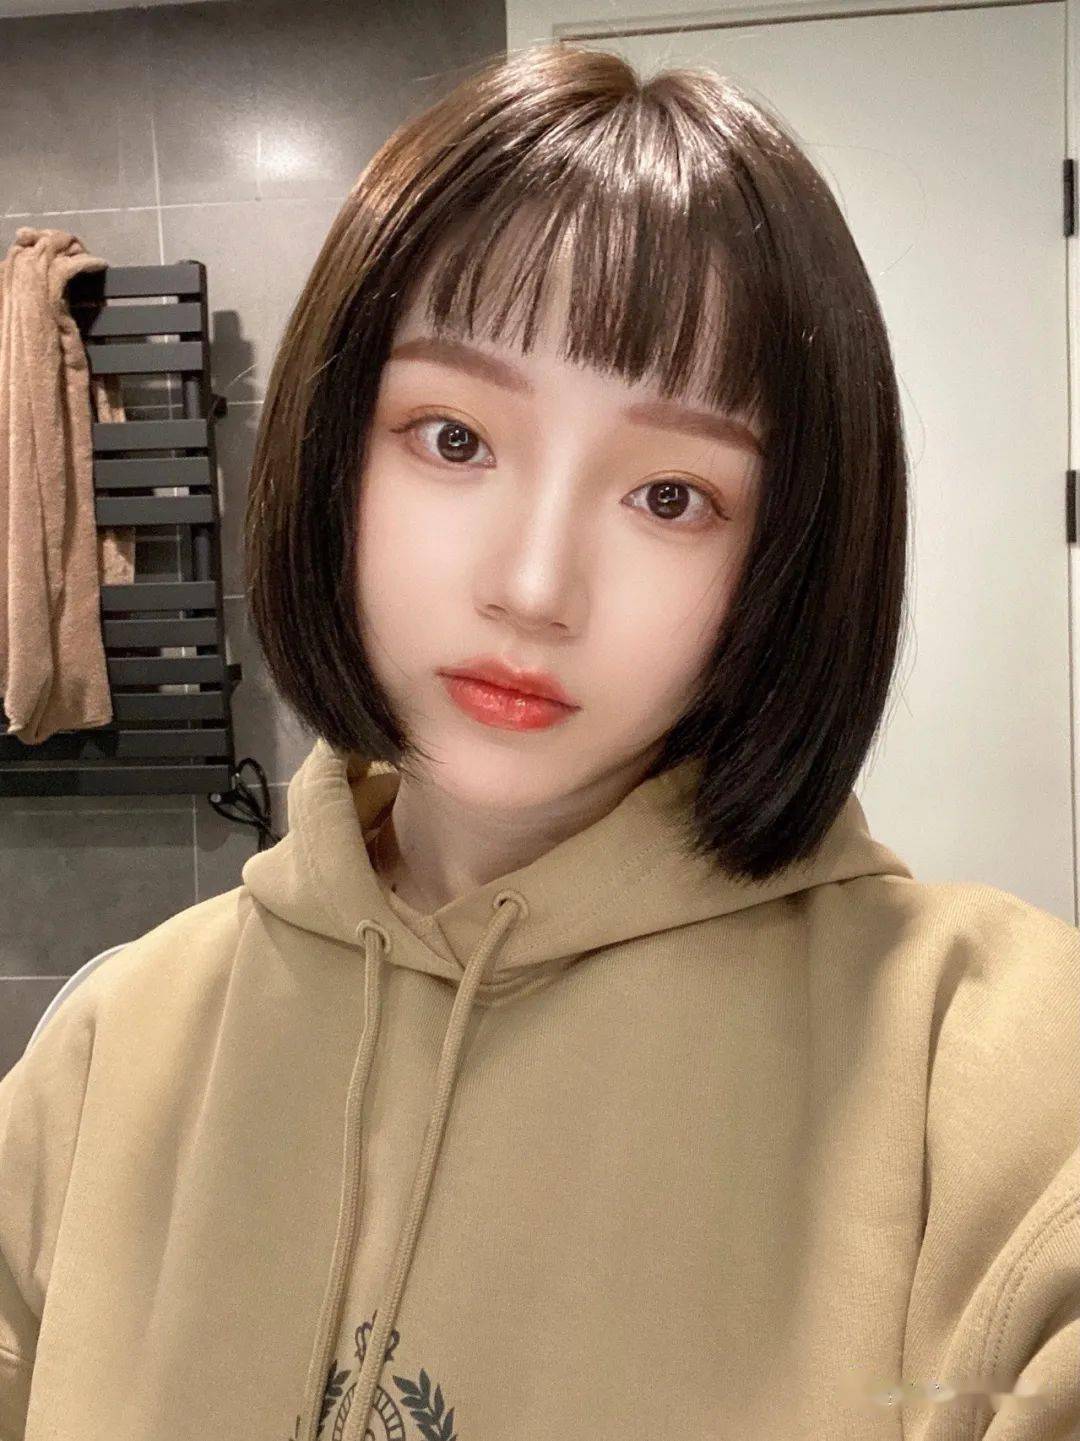 女生头发型2021刘海图片